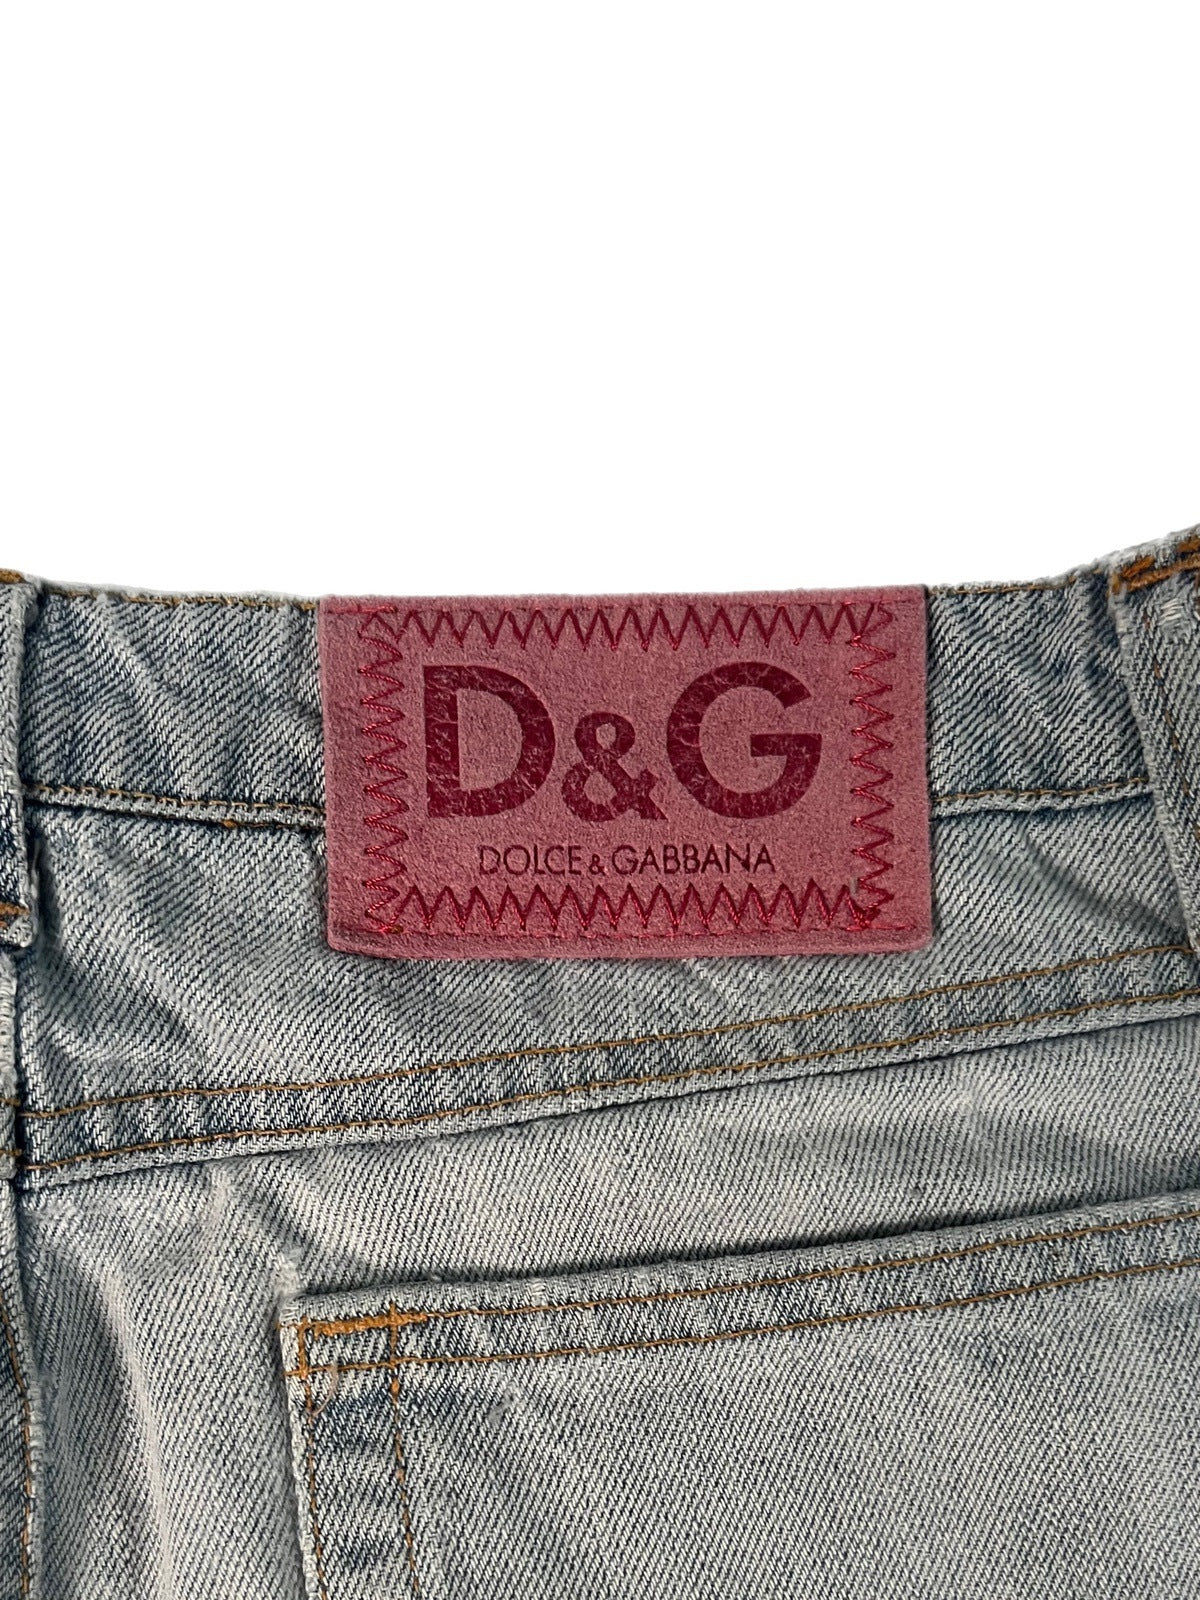 D&G mini denim skirt pink logo